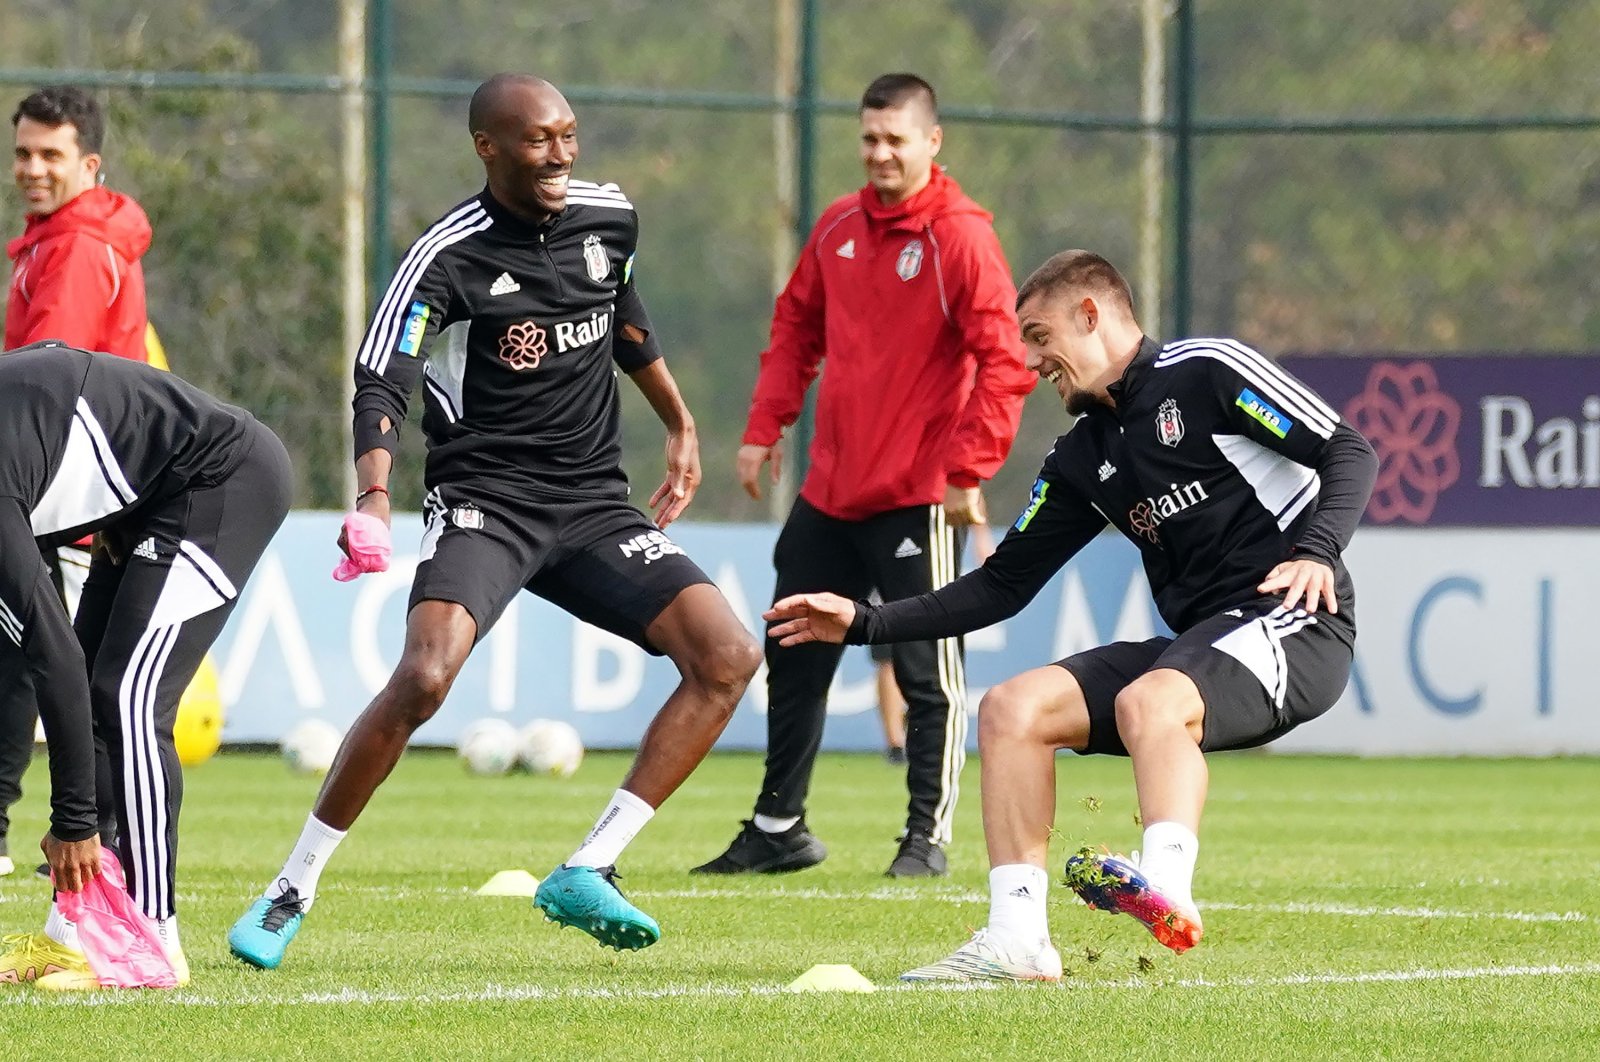 Beşiktaş players train ahead of their derby against Galatasaray, Nov. 4, 2022 (IHA Photo)